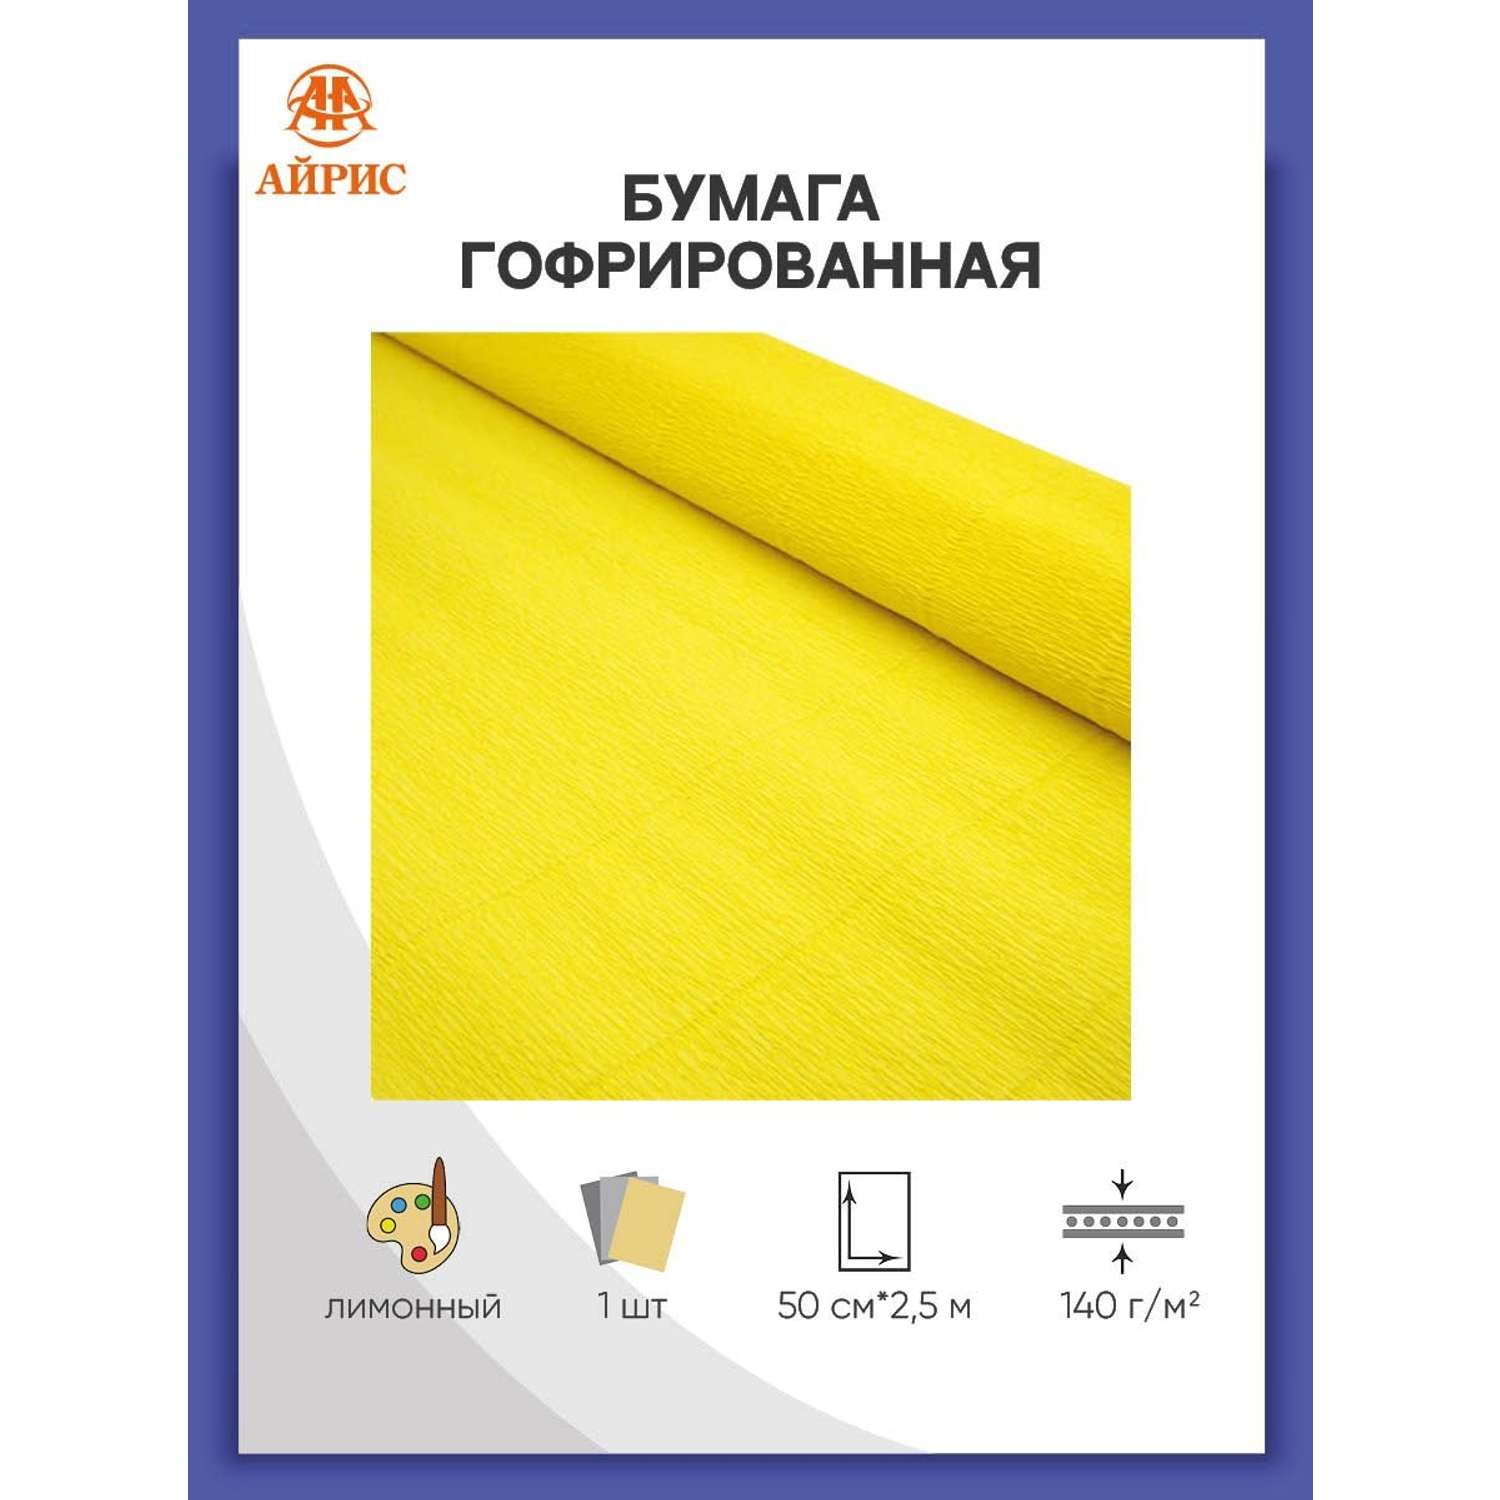 Бумага Айрис гофрированная креповая для творчества 50 см х 2.5 м 140 г лимонная - фото 1